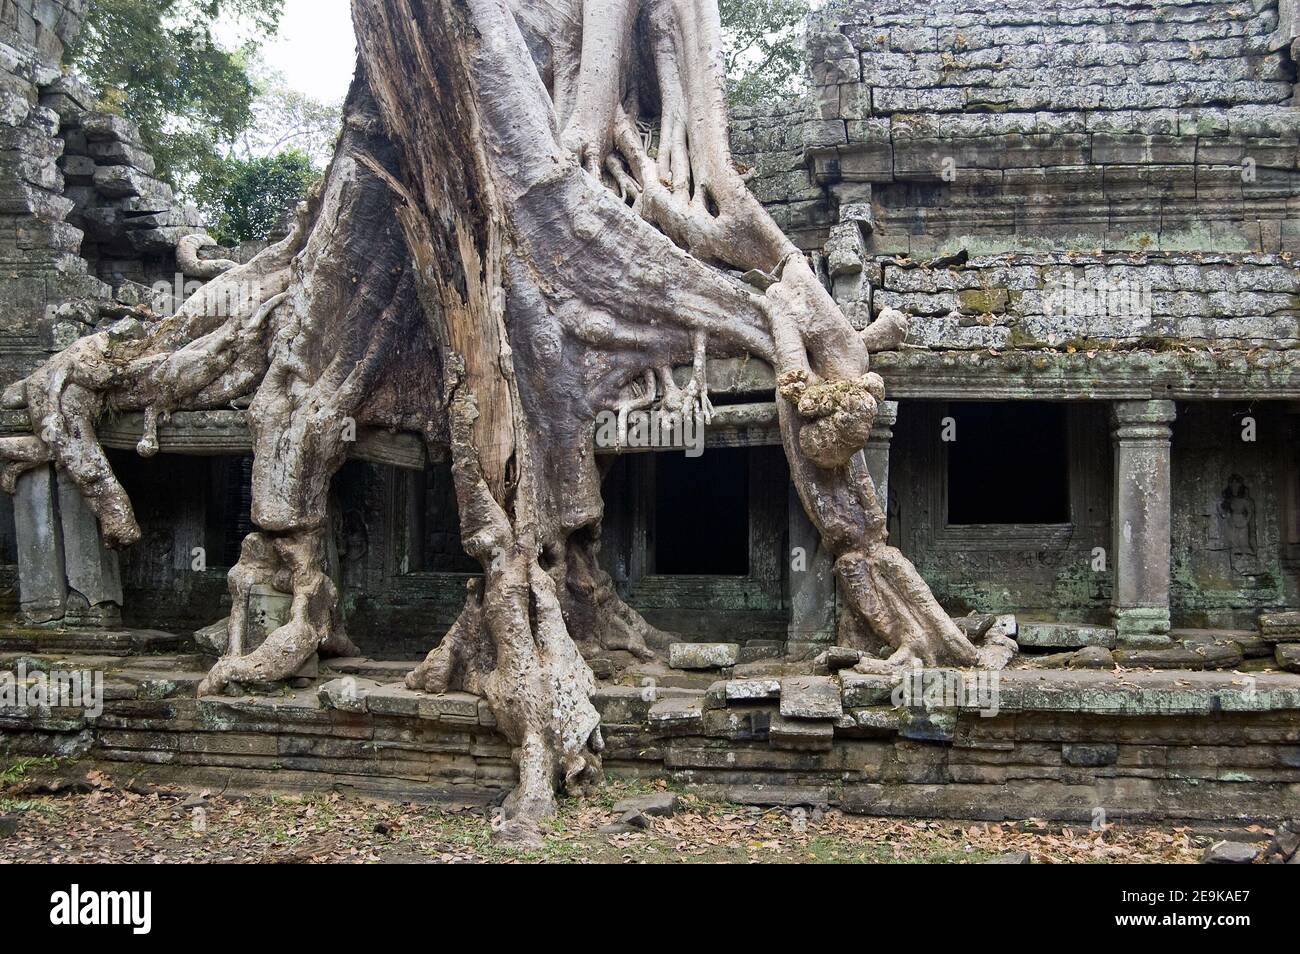 Un grande albero di Kapok, nome latino Ceiba pentandra, che cresce attraverso le antiche rovine Khmer del tempio Preah Khan, Angkor, Cambogia. Antica struttura, hun Foto Stock